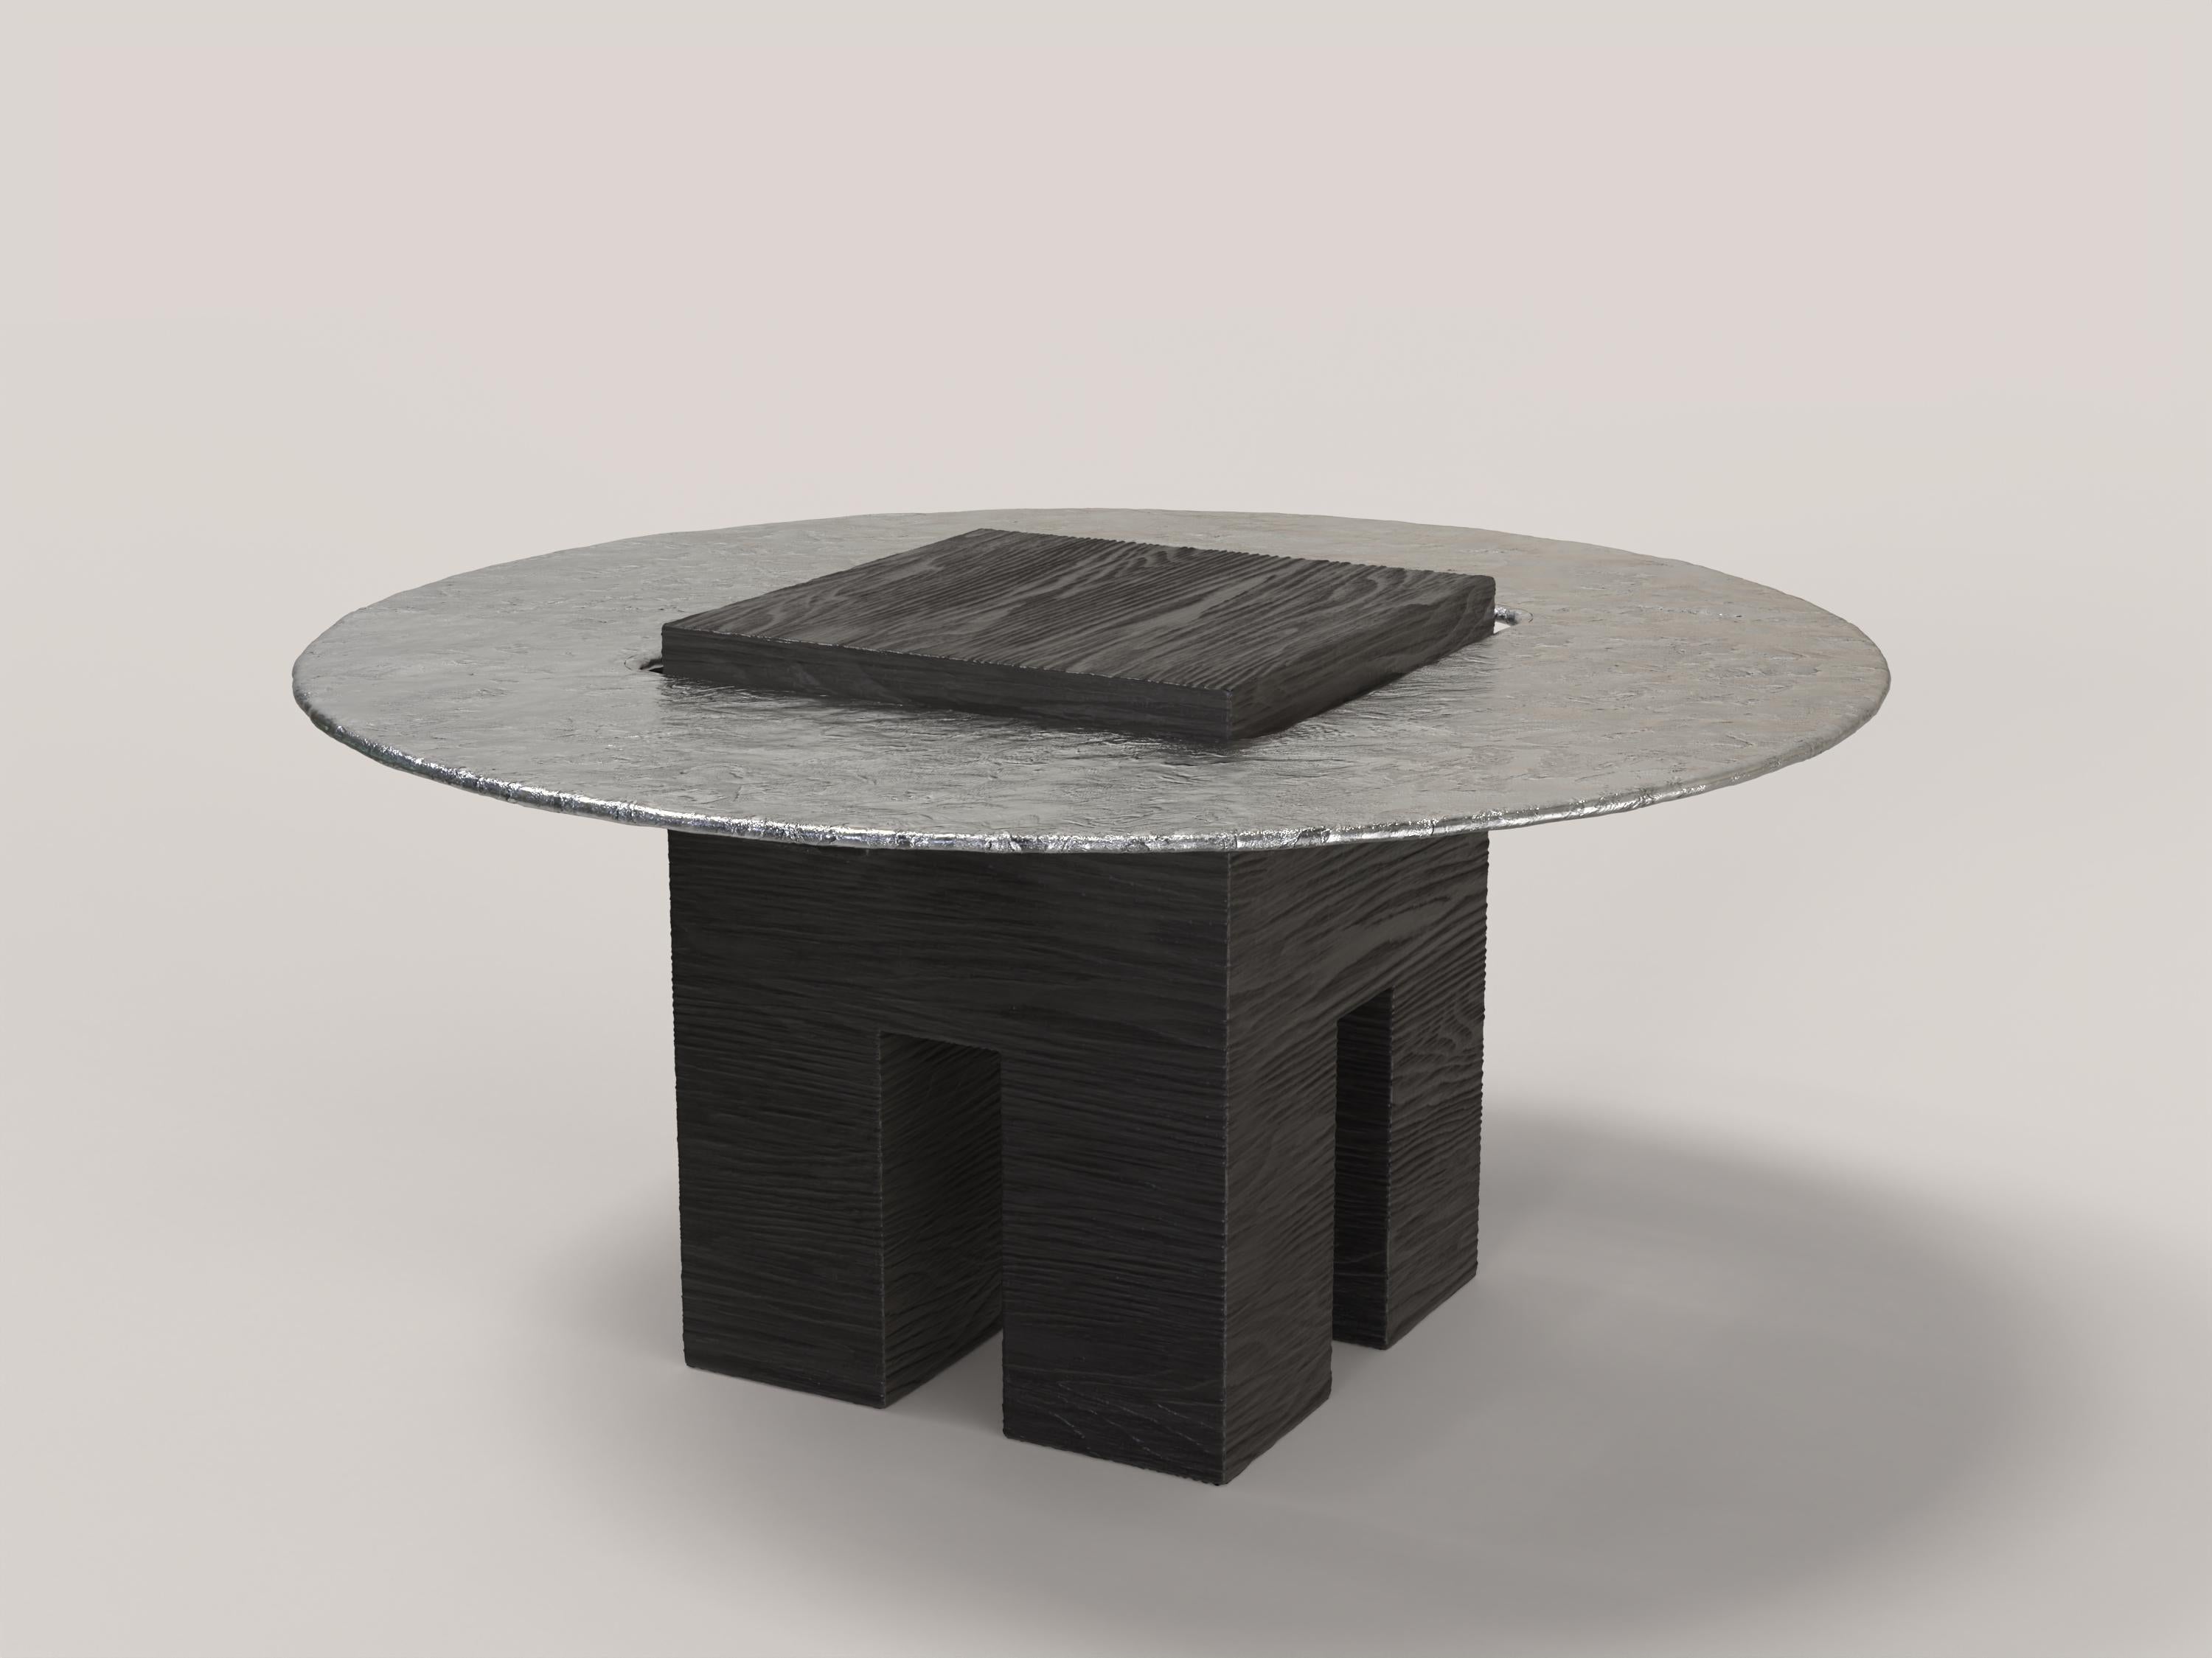 Italian Limited Edition Aluminium Wood Table, Tempio V1 by Edizione Limitata For Sale